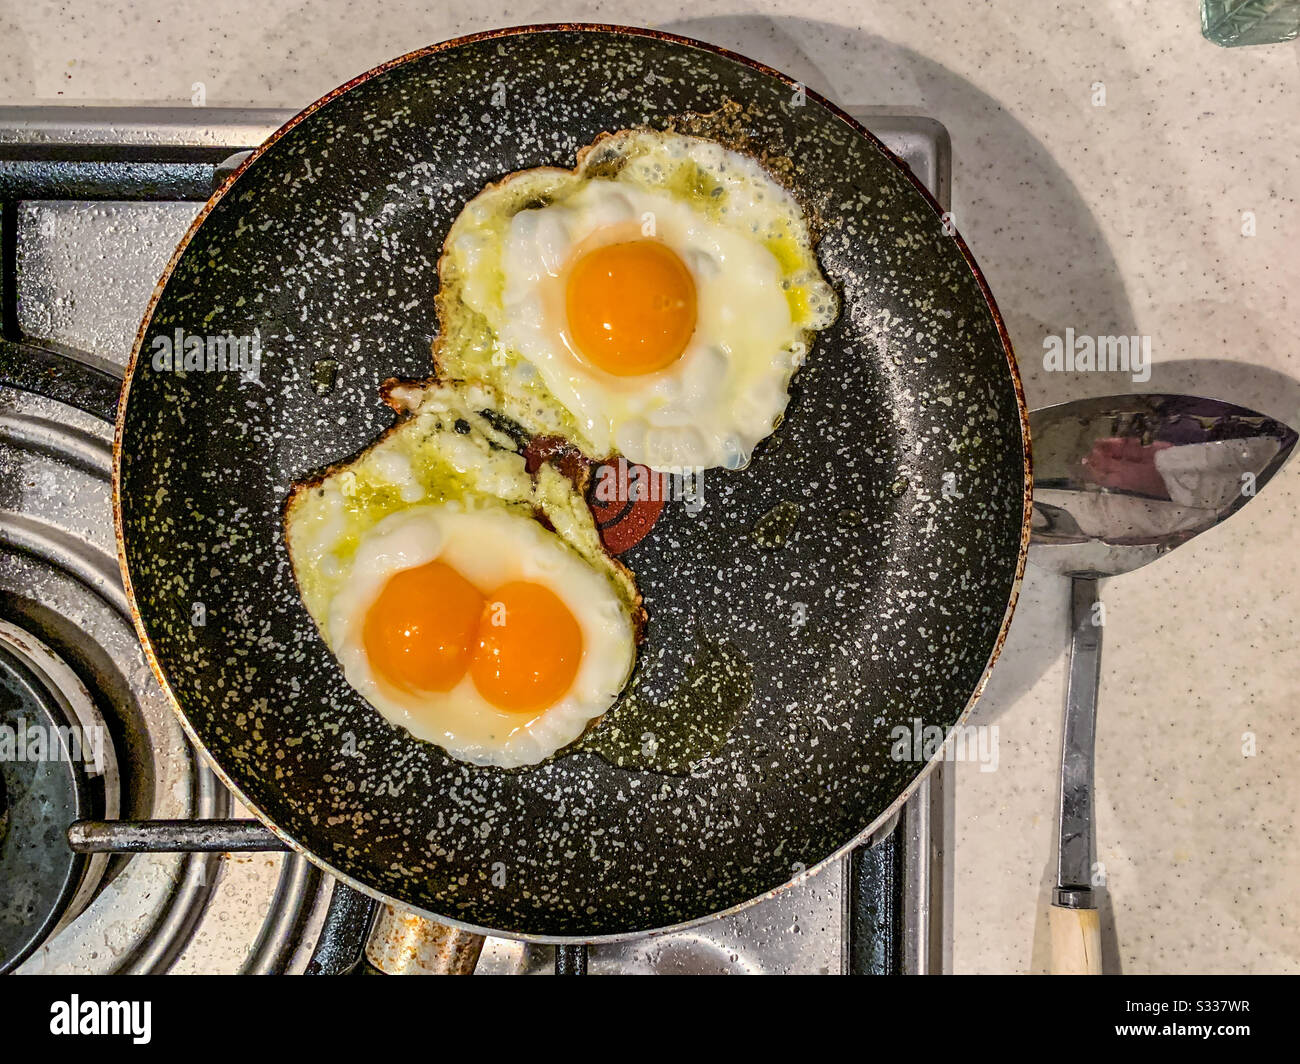 Œufs frits dans une poêle, dont un œuf de jaune double Banque D'Images